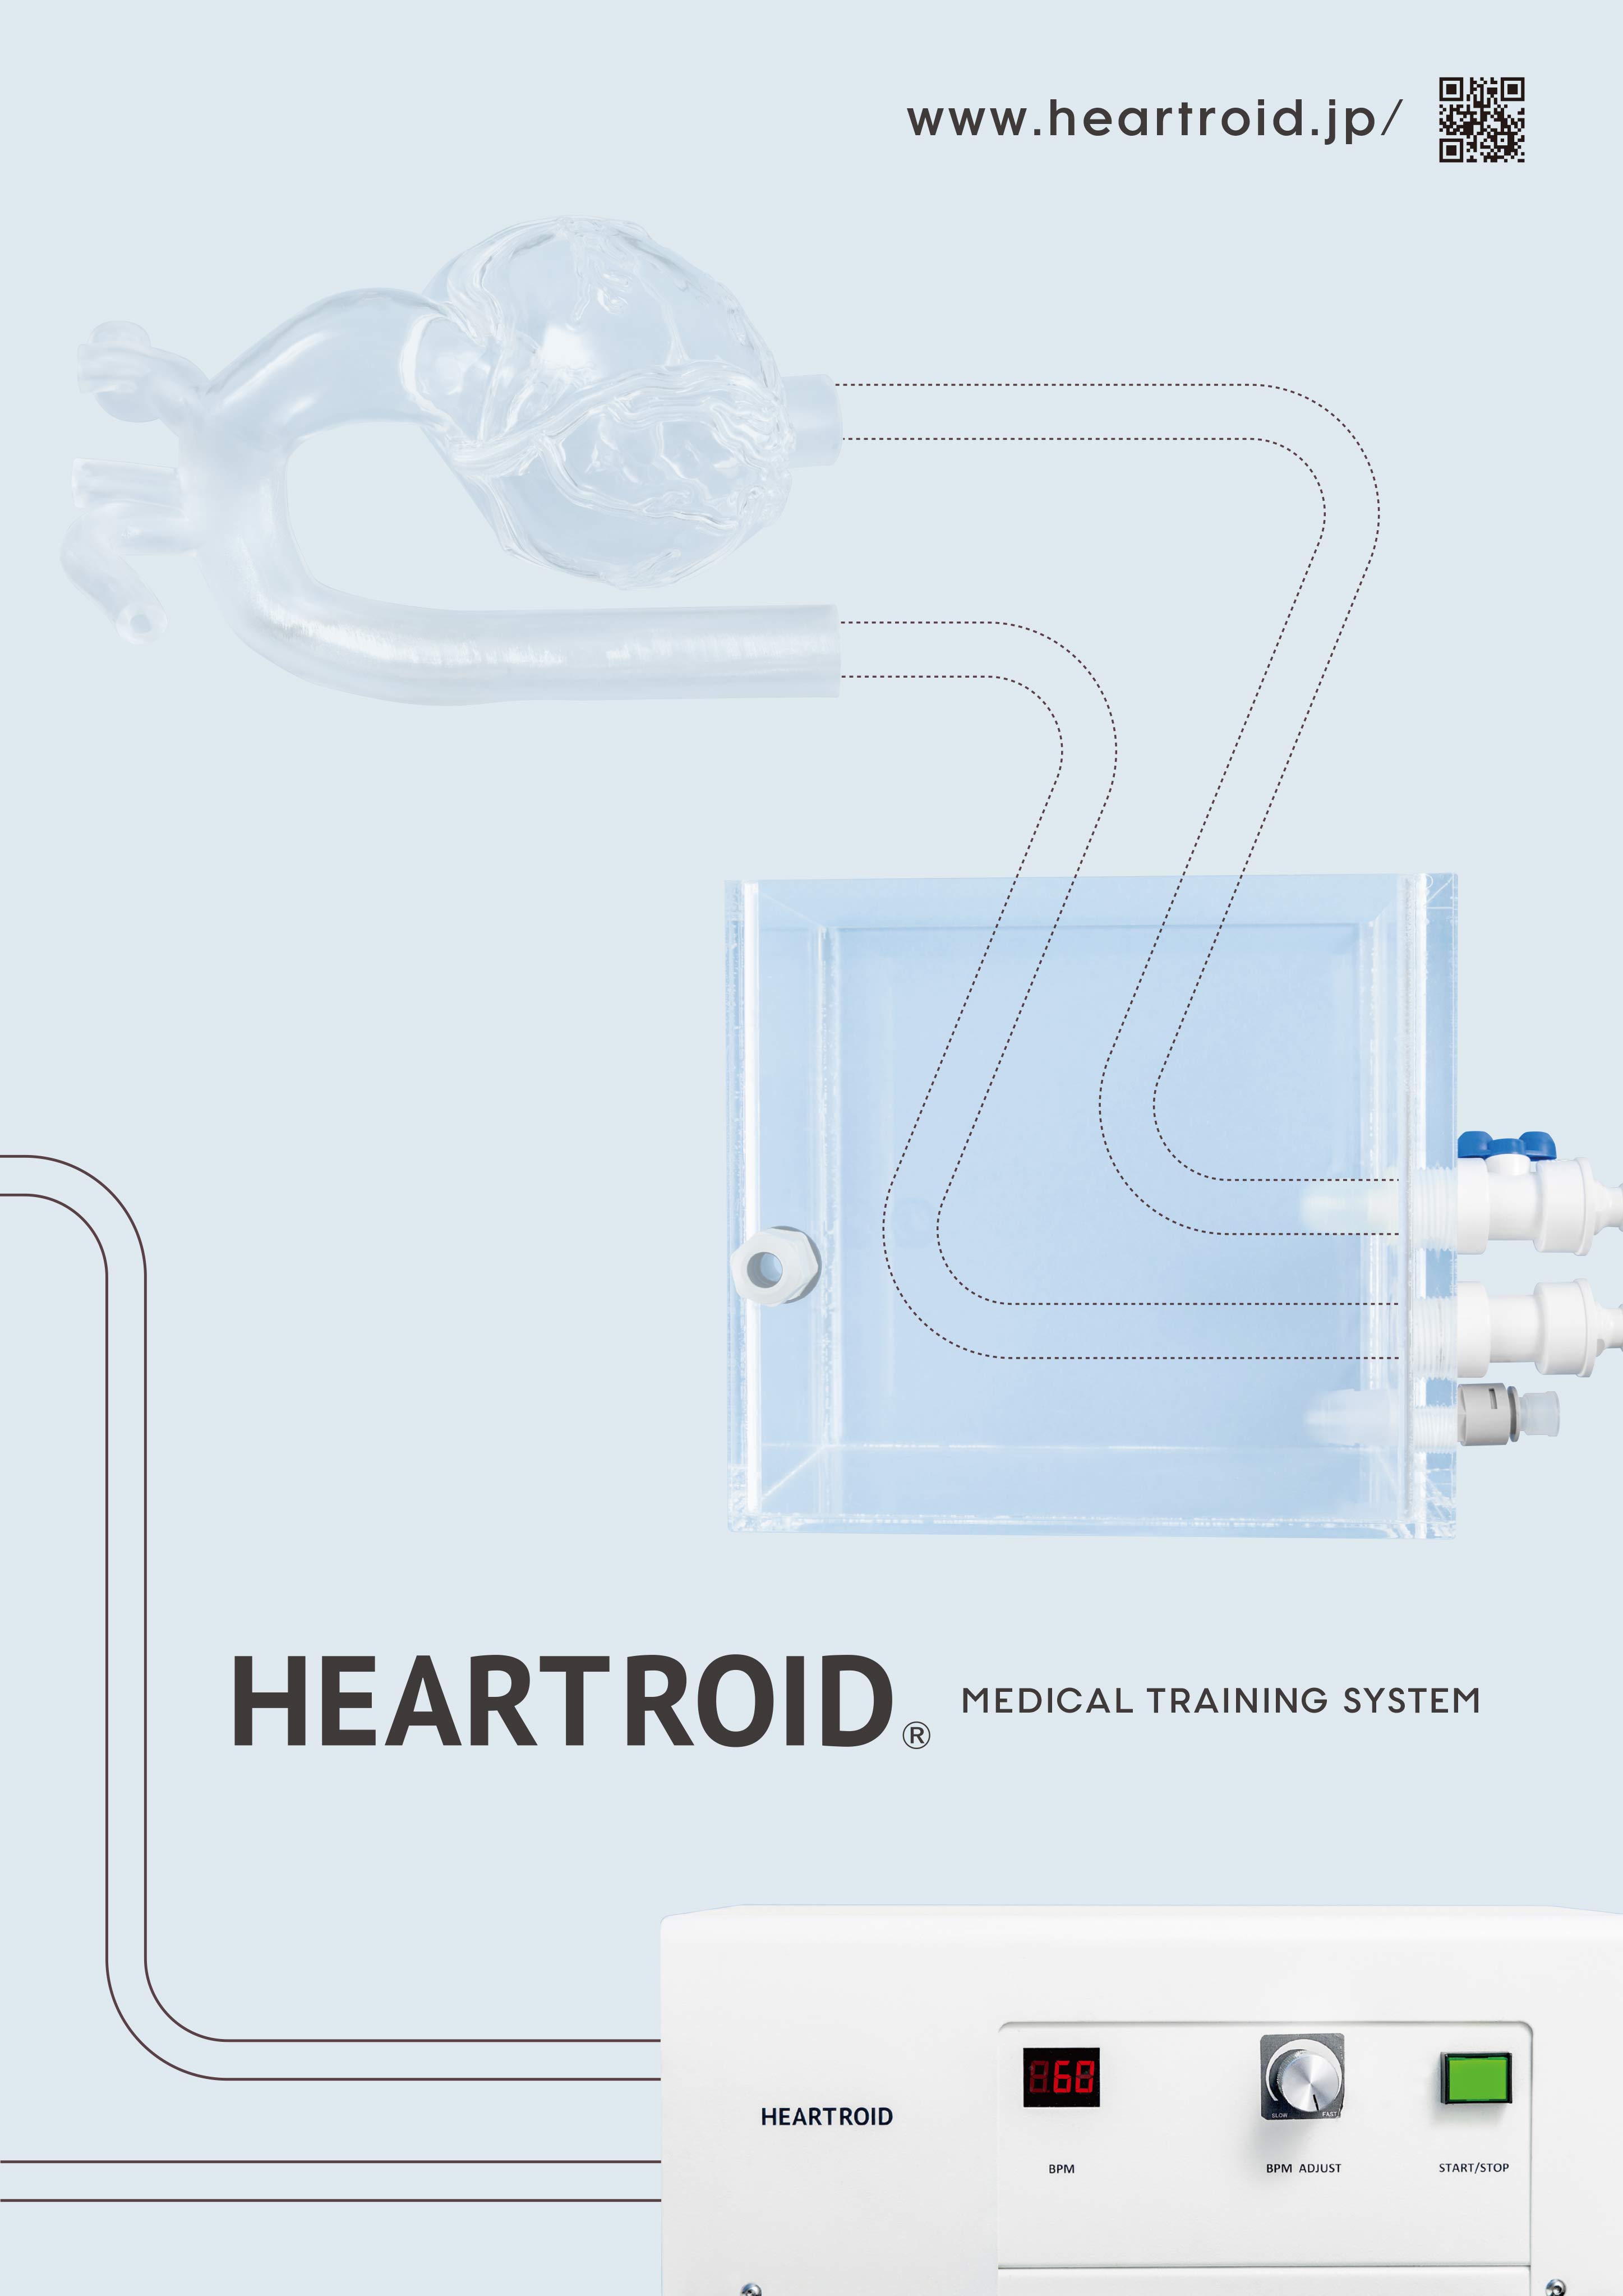 HEARTROID(日本語)（株式会社JMC）のカタログ無料ダウンロード